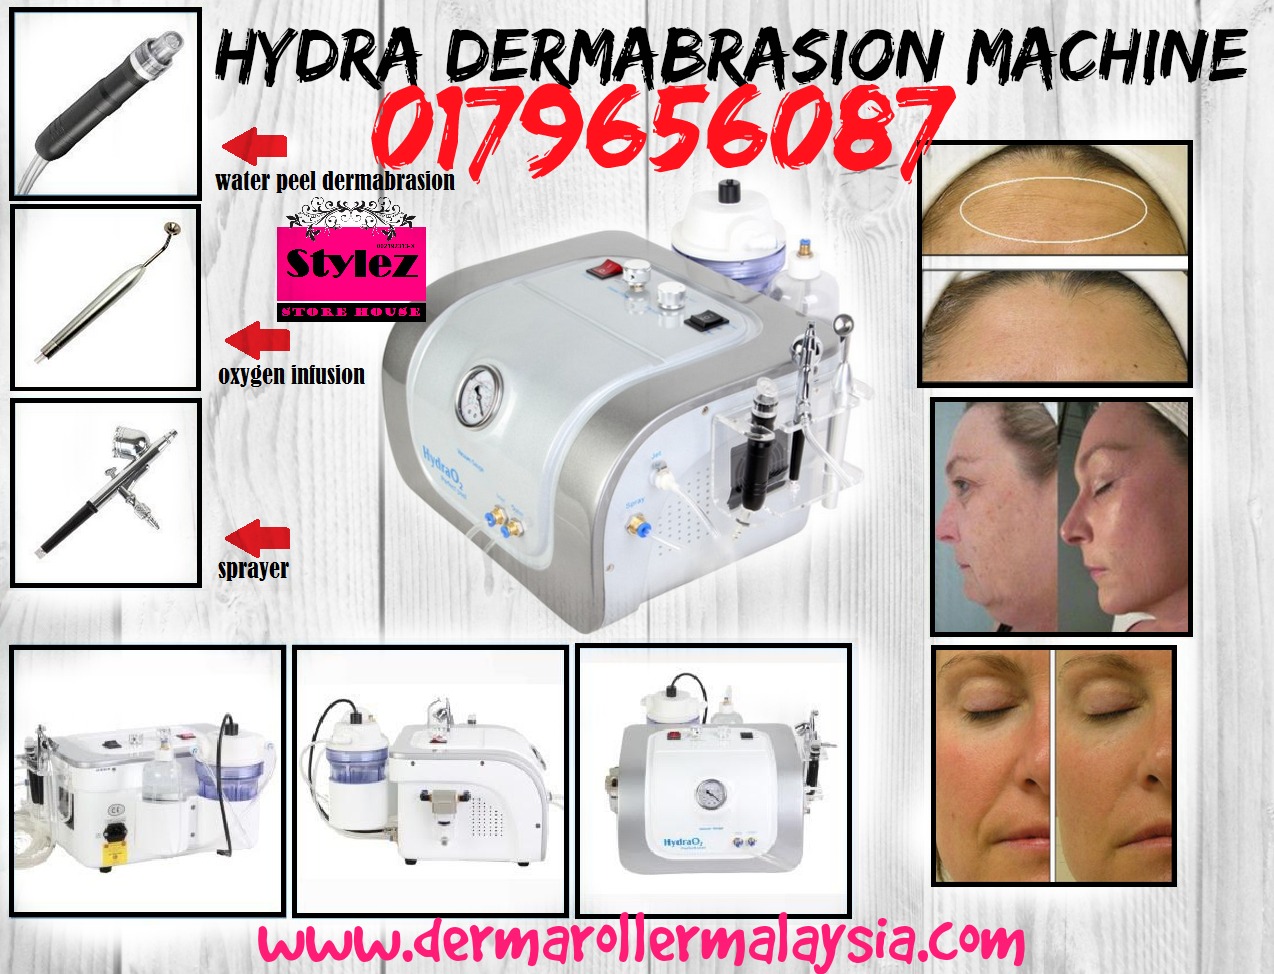 HYDRA DERMABRASION MACHINE